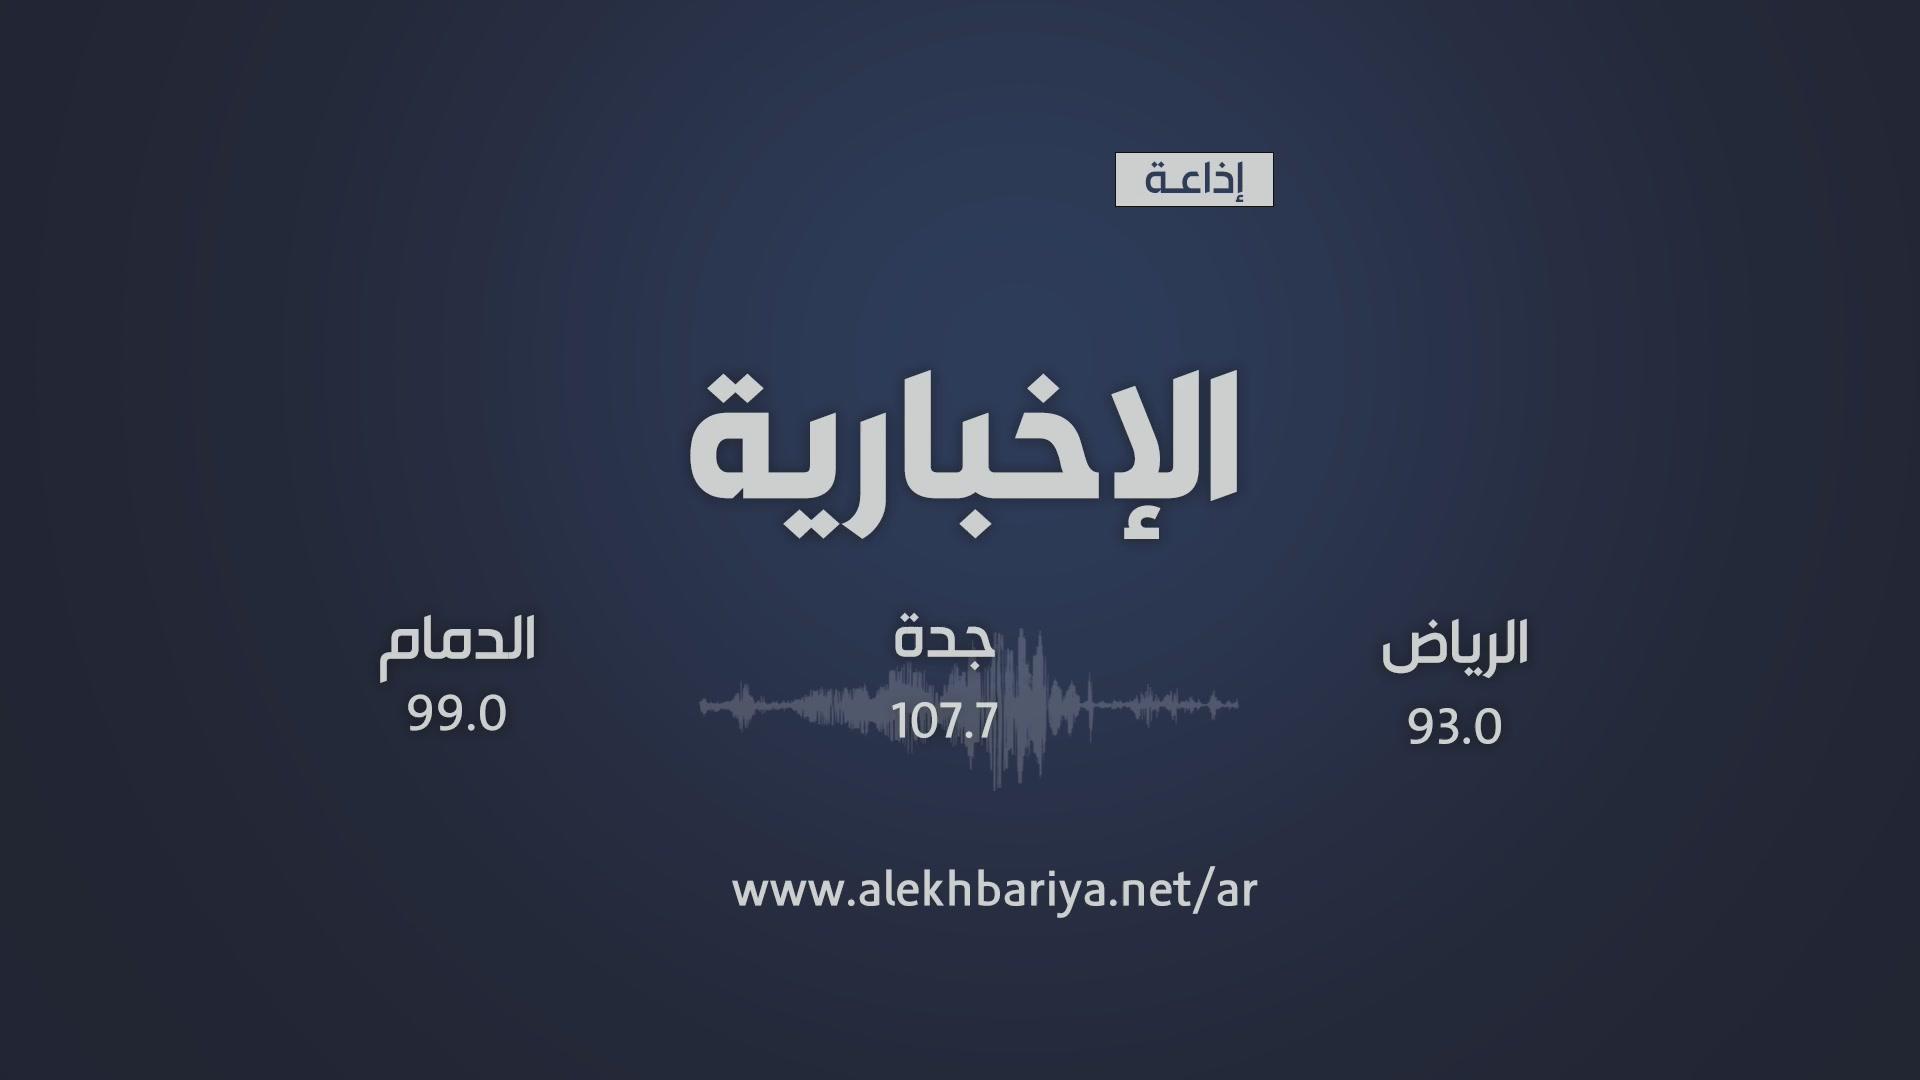 Profile Image for EKH_Radio